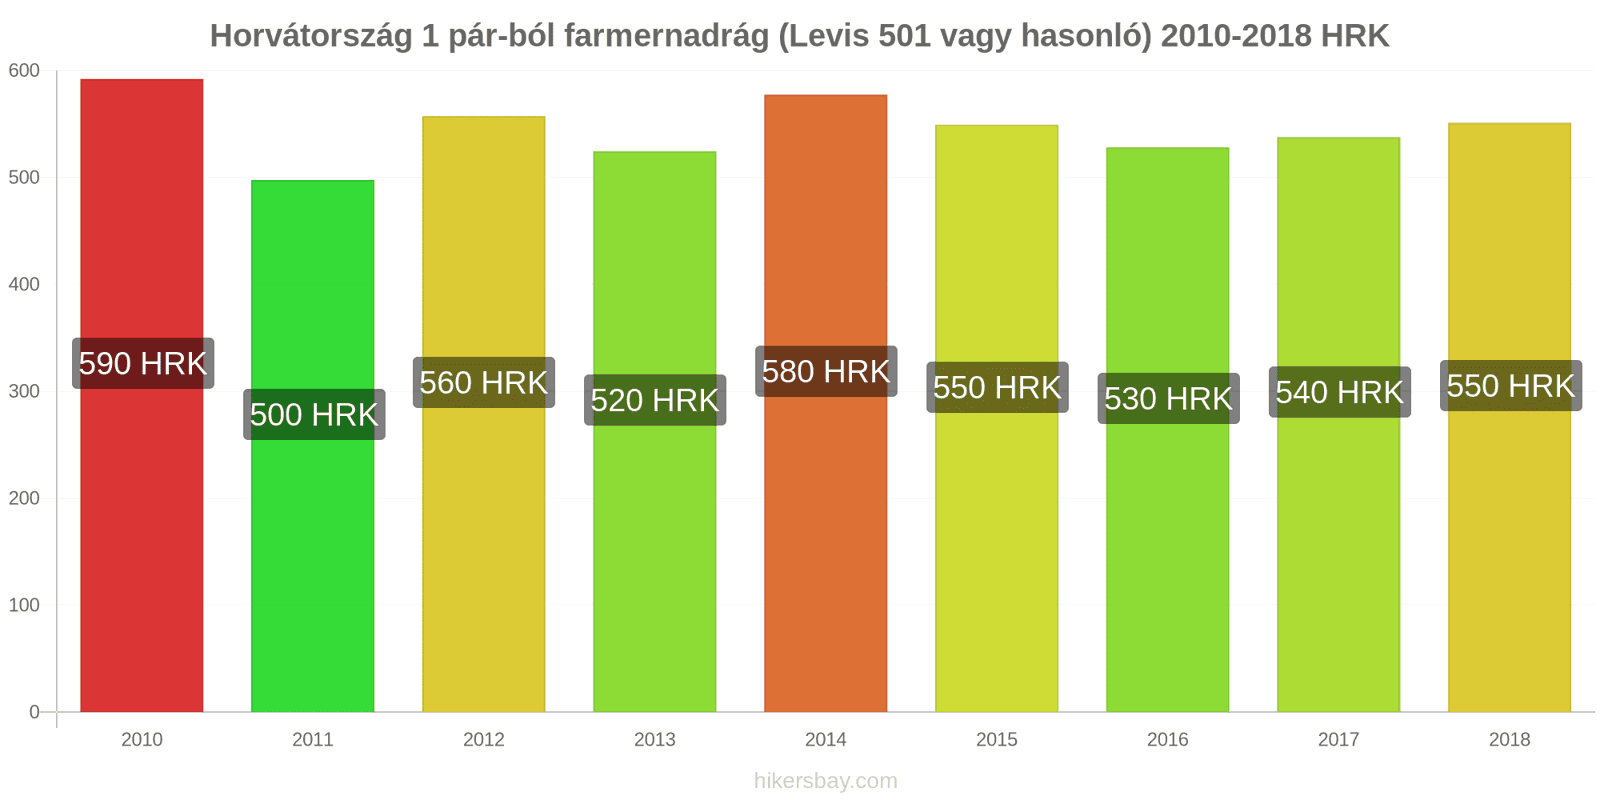 Horvátország ár változások 1 pár farmer (Levis 501 vagy hasonló) hikersbay.com